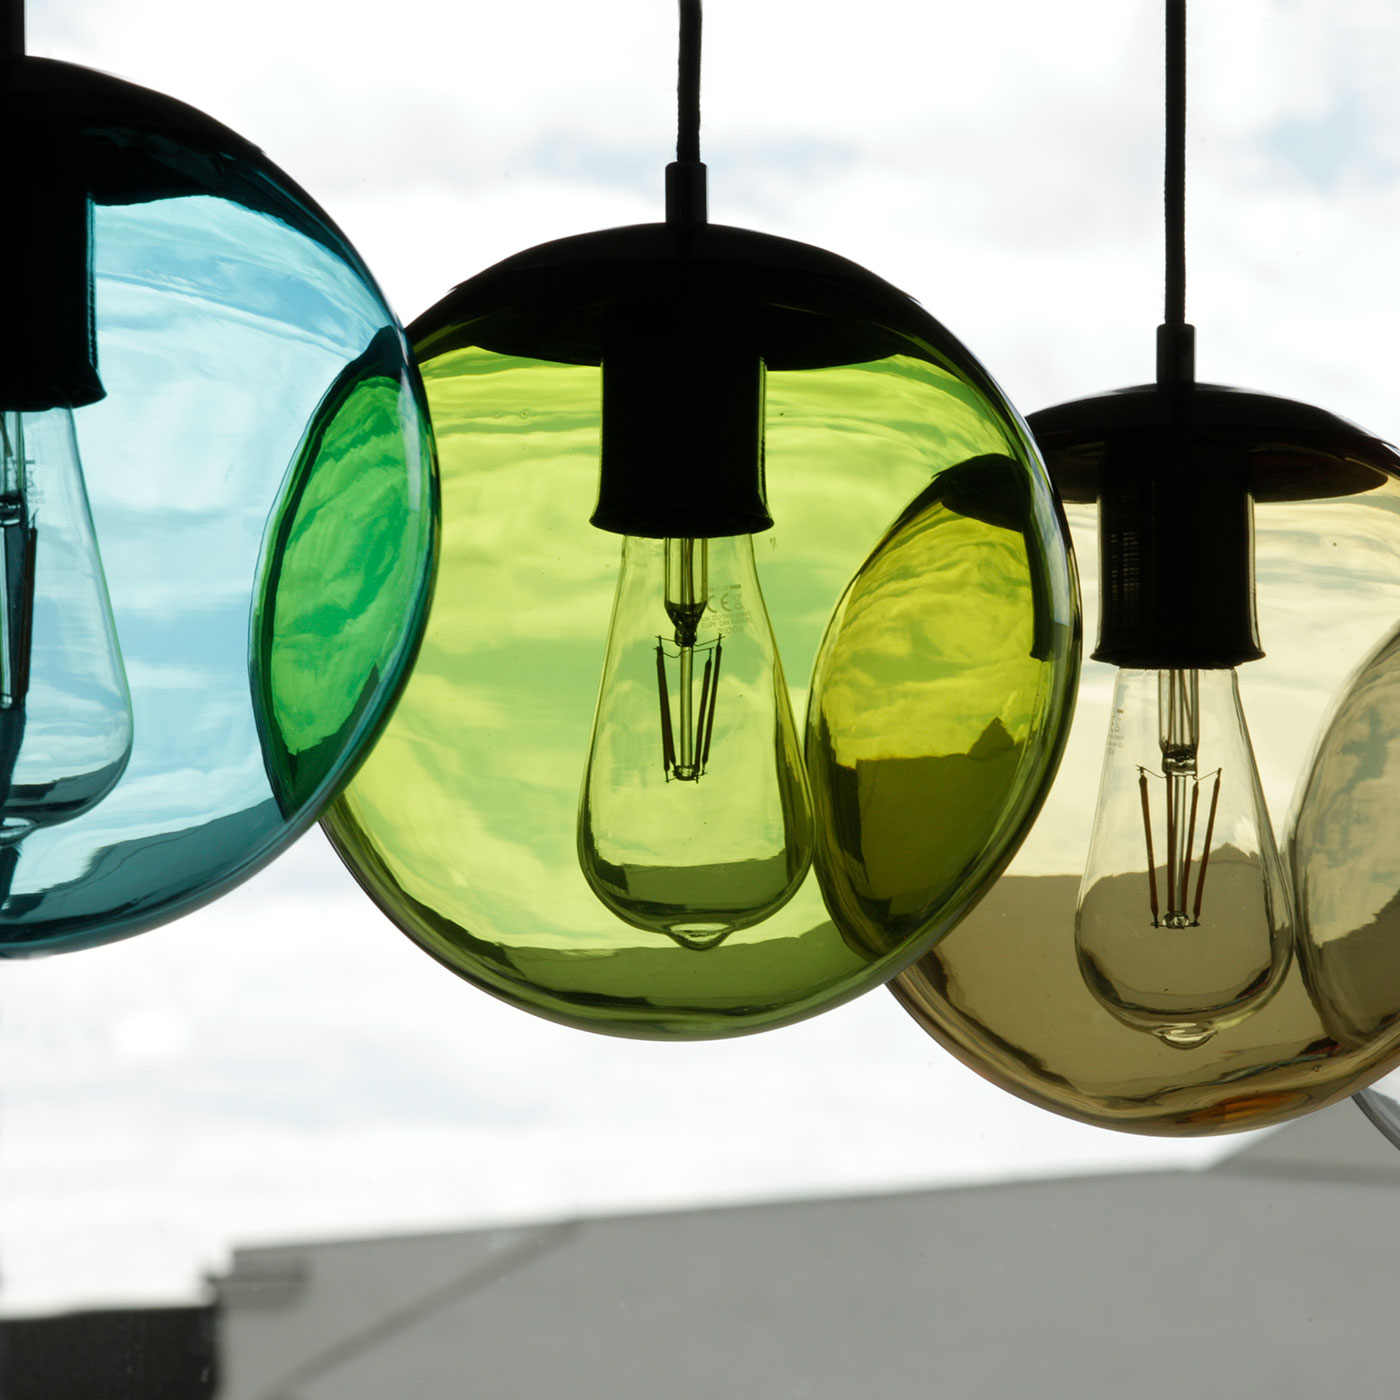 Bunt gefärbte Glaskugel-Leuchte, div. Glas-Farben, Ø 22 cm: Glas-Hängeleuchte mit farbiger Glaskugel: hier Türkis, Oliv-Grün, Bernstein-braun Glas